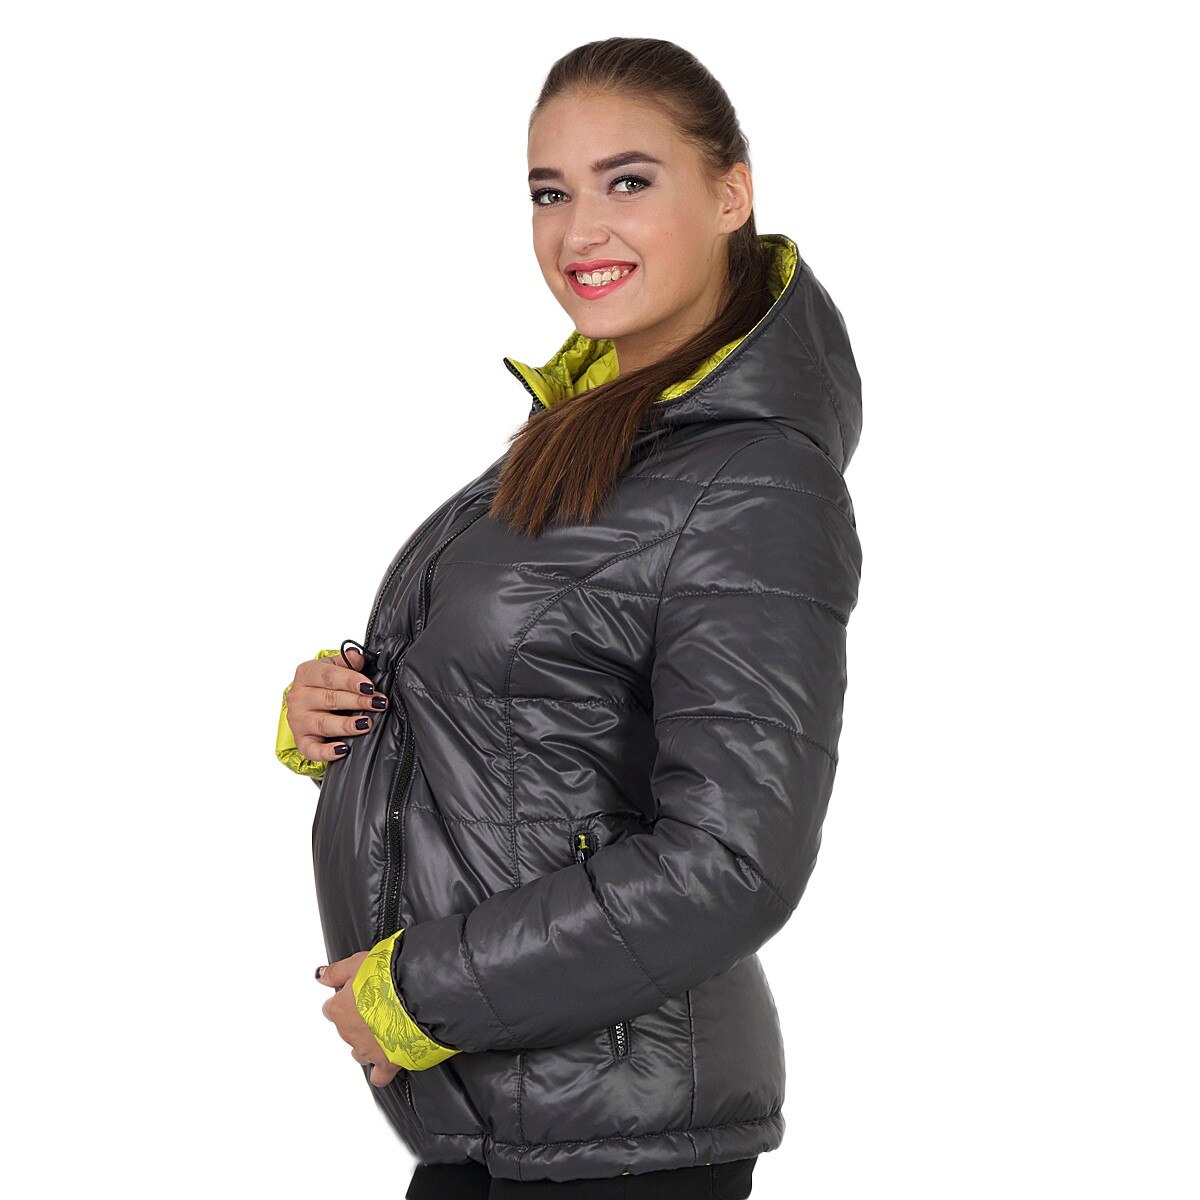 Как правильно выбрать куртку для беременных